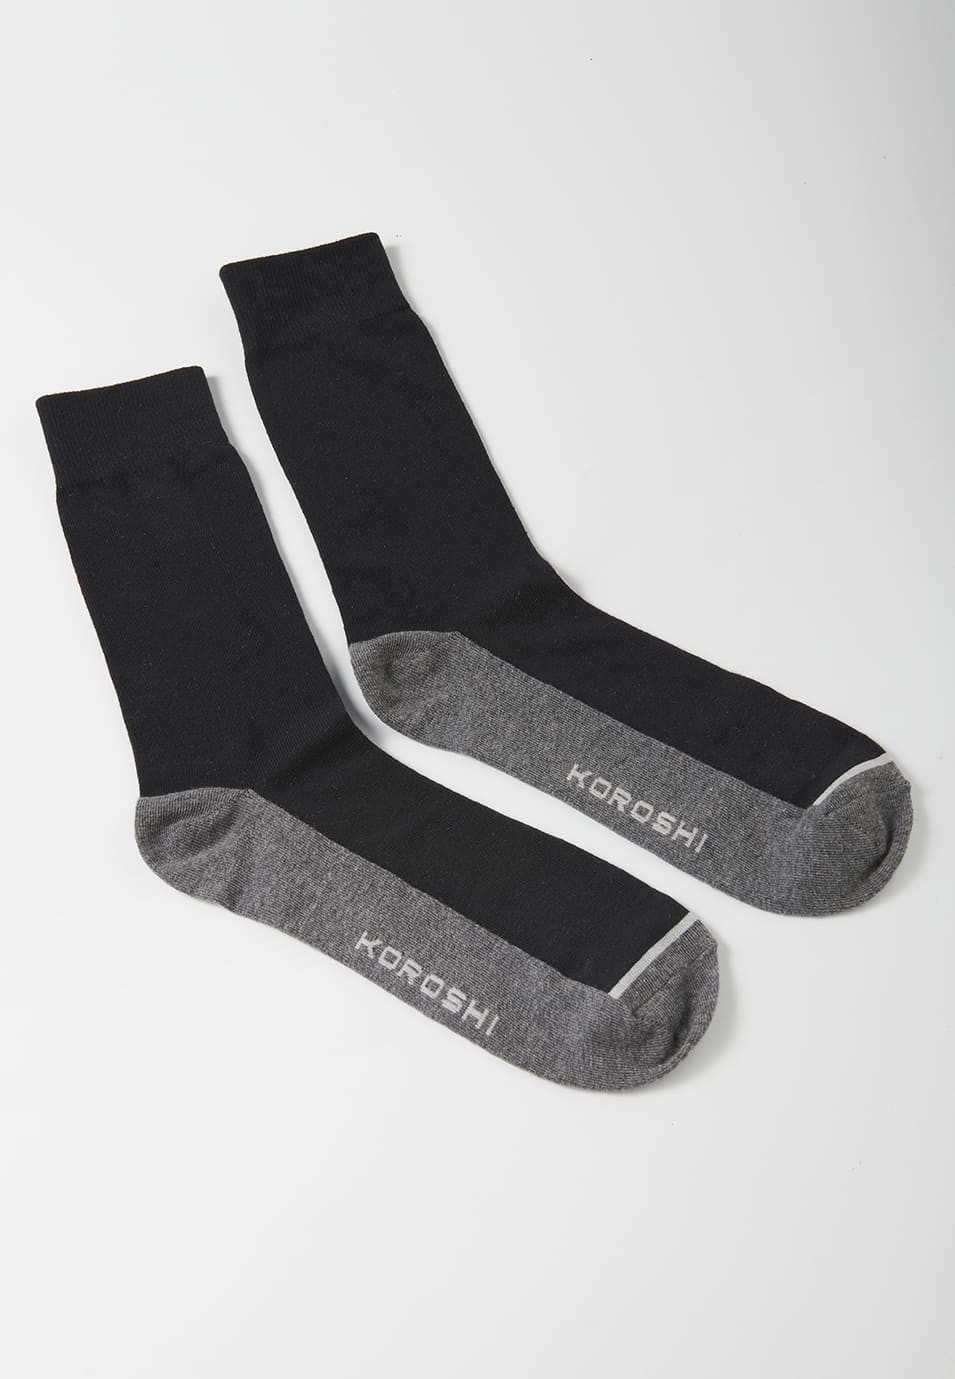 Packung mit 7 Socken in verschiedenen Farben über dem Knöchel für Herren